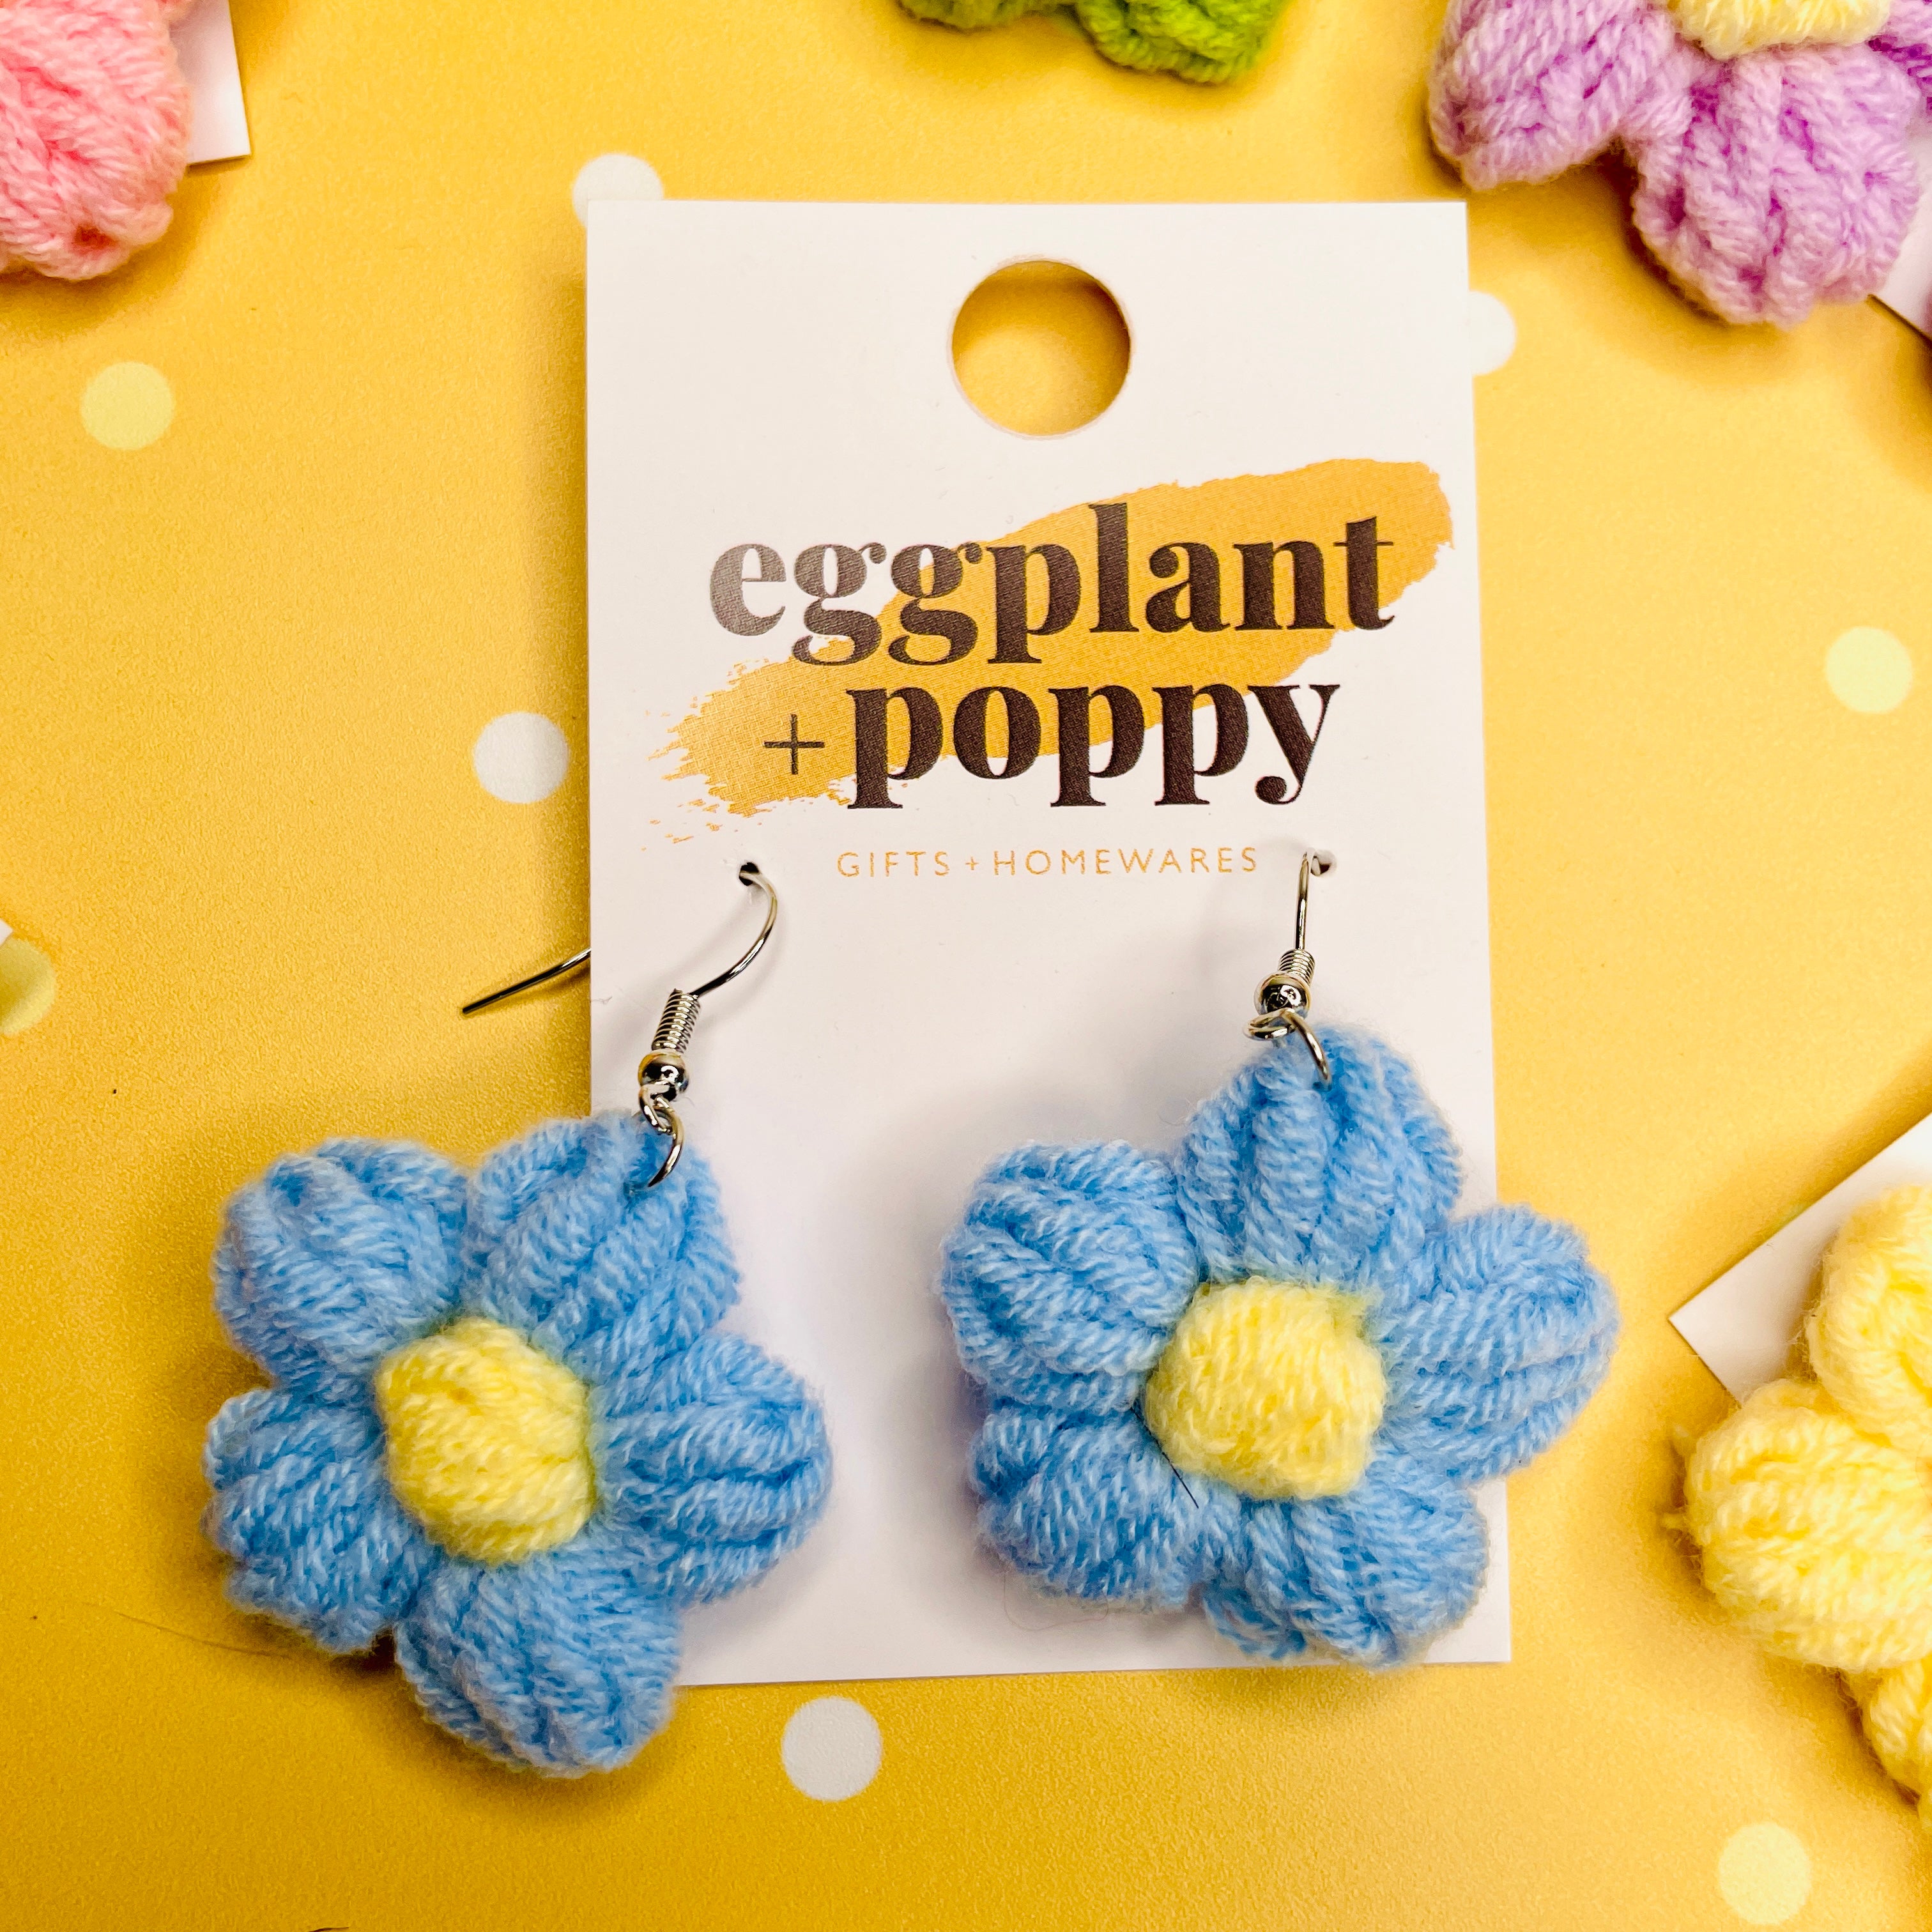 Crochet Flower Earrings